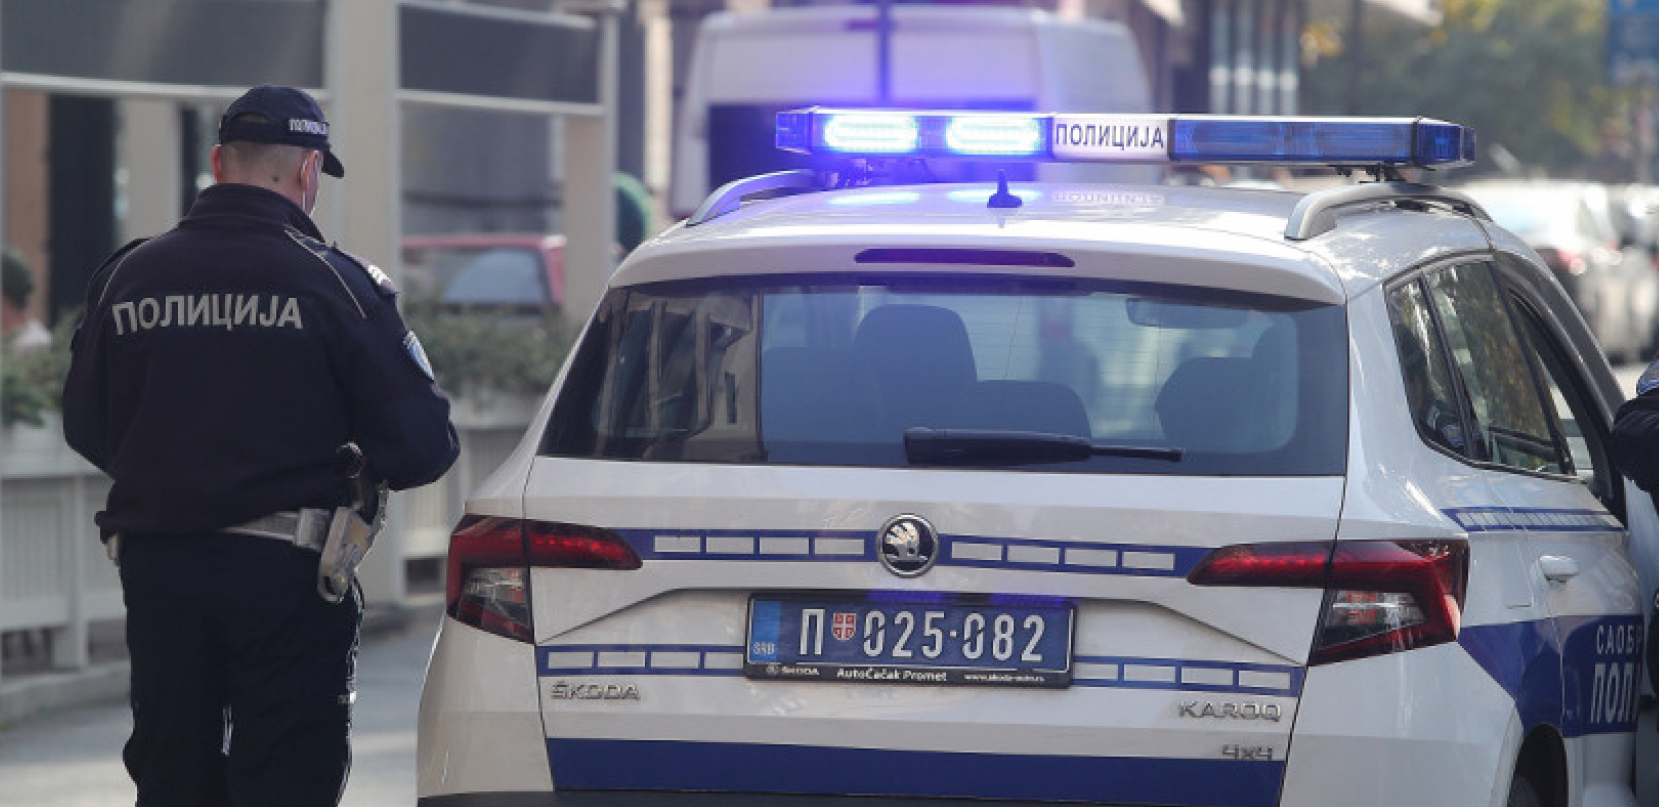 VOZIO PIJAN, PA UDARIO KOLIMA ČOVEKA Policija uhapsila bahatog vozača u Zrenjaninu